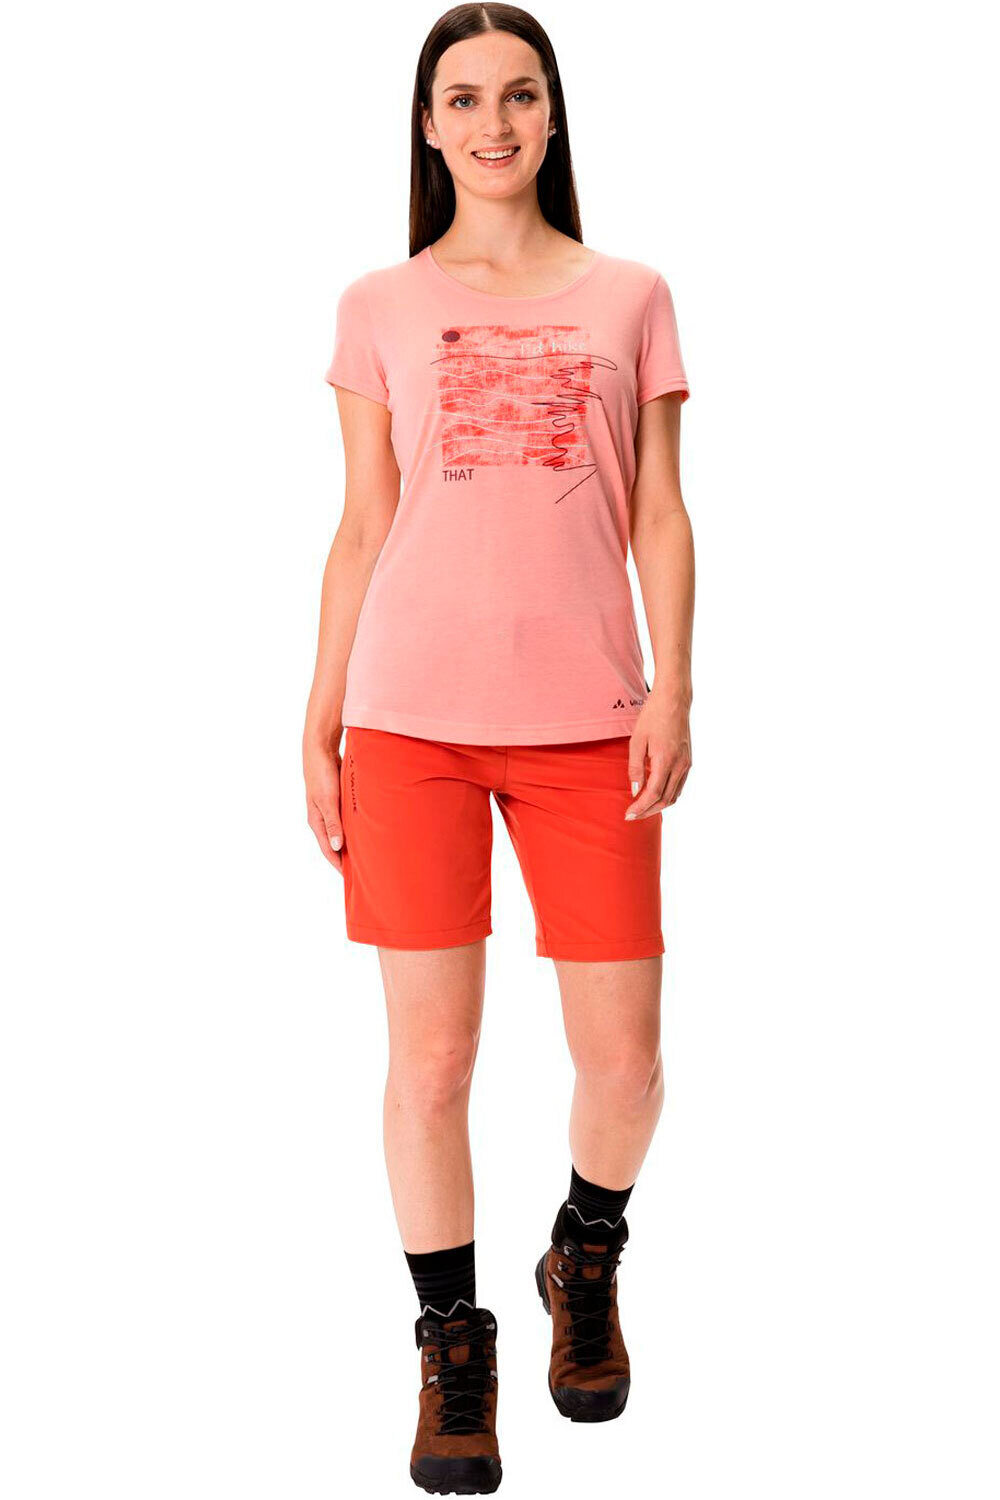 Vaude camiseta montaña manga corta mujer Women's Skomer Print T-Shirt II 04